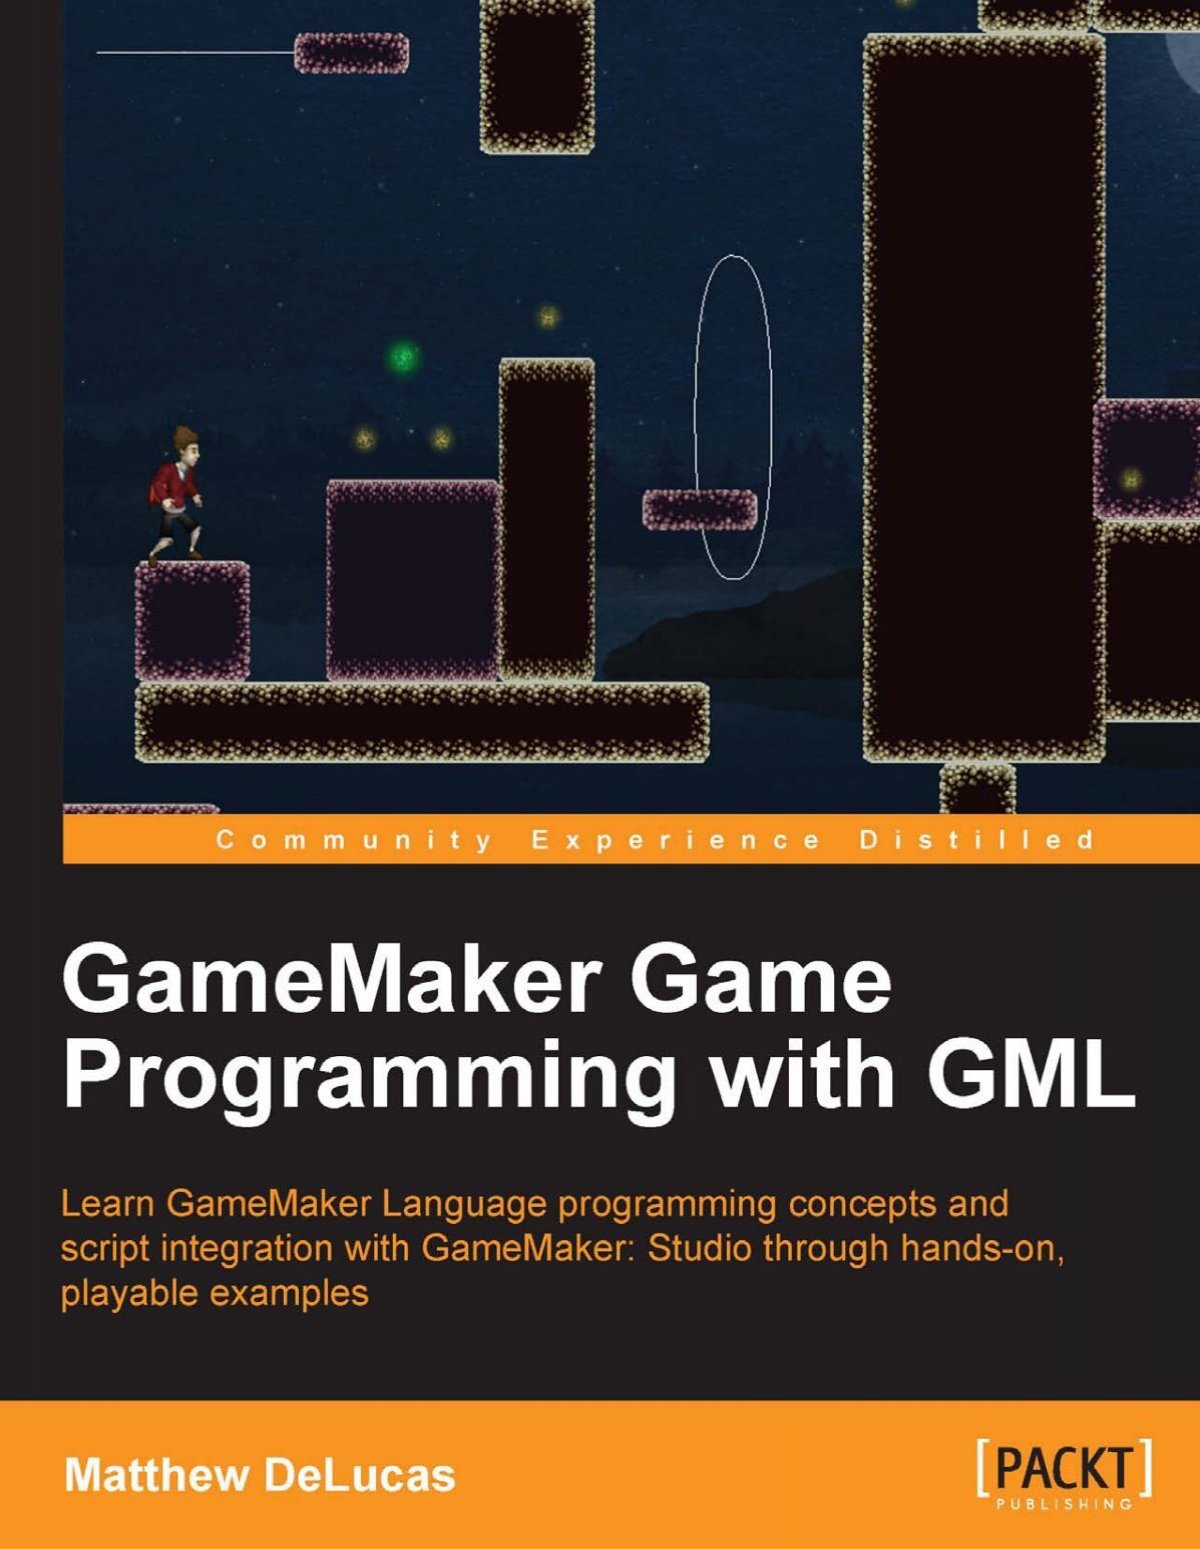 Lập trình game với GML: GML là ngôn ngữ lập trình game vô cùng đơn giản, được sử dụng trong nhiều game đình đám. Với GML, bạn có thể tự thiết kế các game độc đáo và hấp dẫn. Hãy thử tìm hiểu về GML và khám phá tiềm năng của mình trong lập trình game.